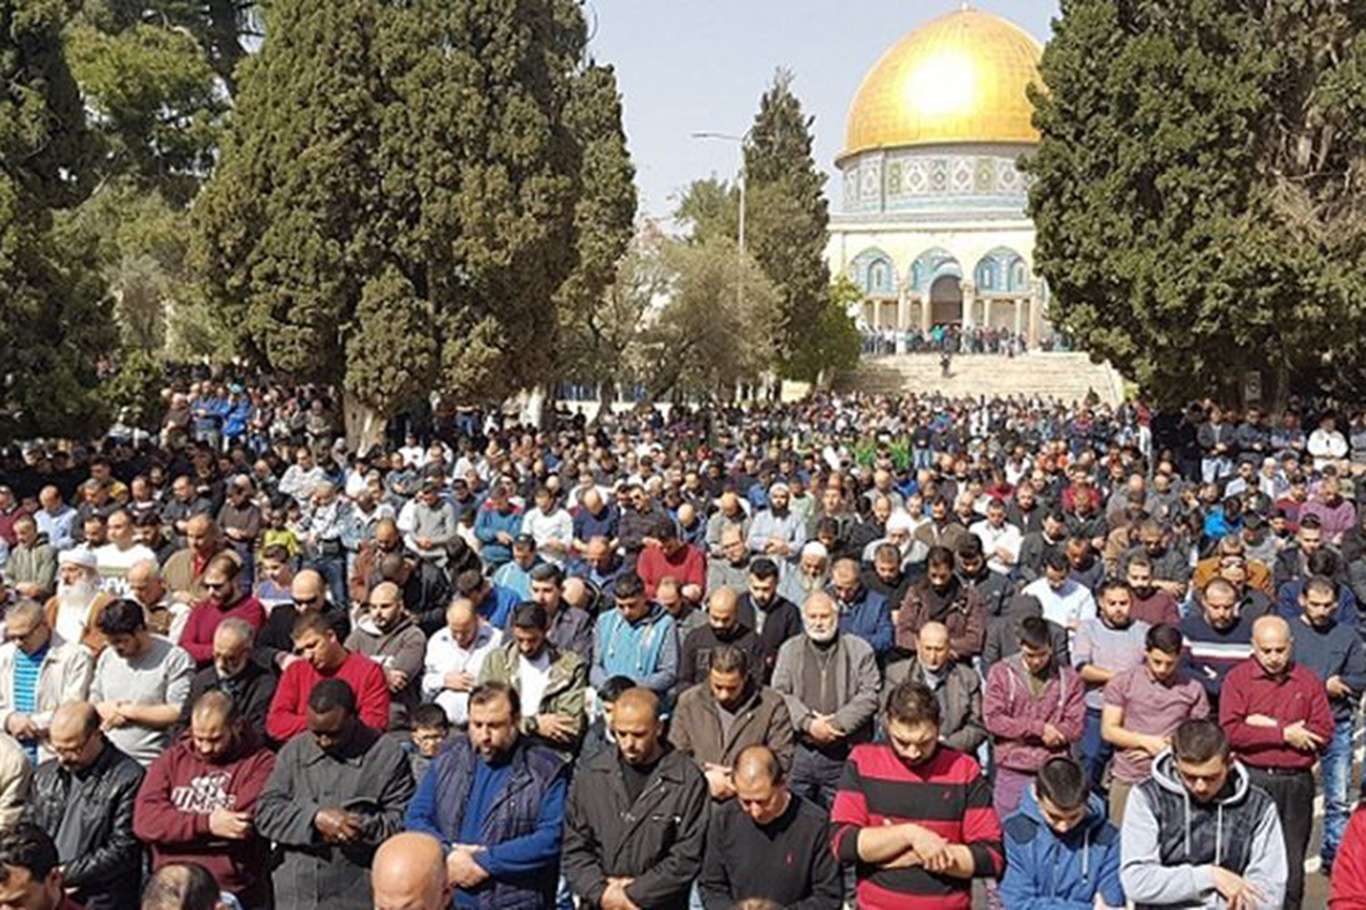 More than 40,000 Muslim worshipers perform Friday prayer at Al-Aqsa Mosque